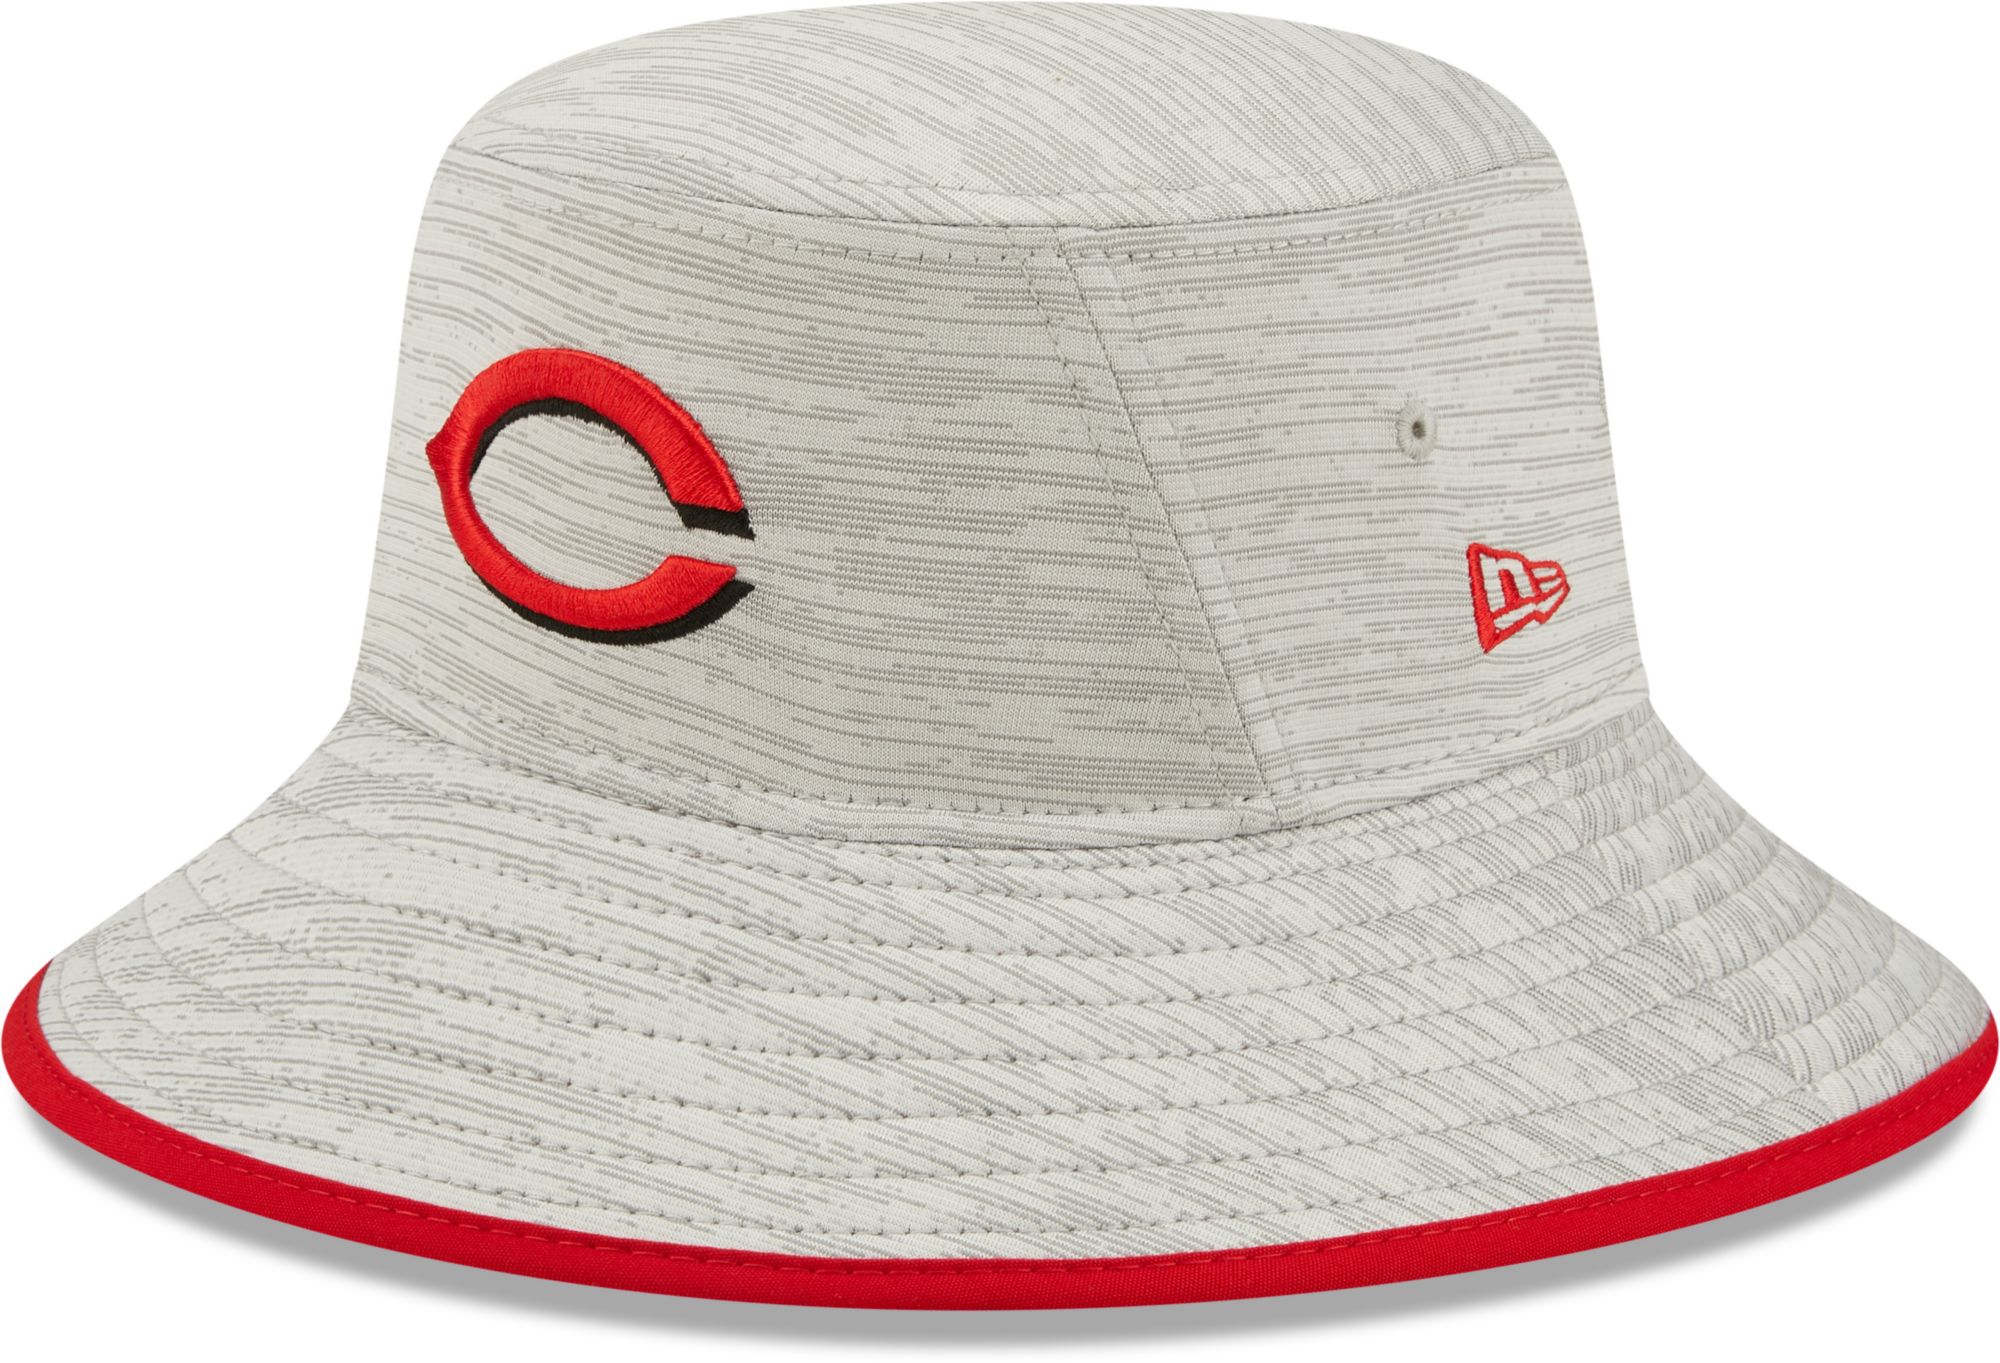 New Era / Men's Cincinnati Reds Gray Distinct Bucket Hat